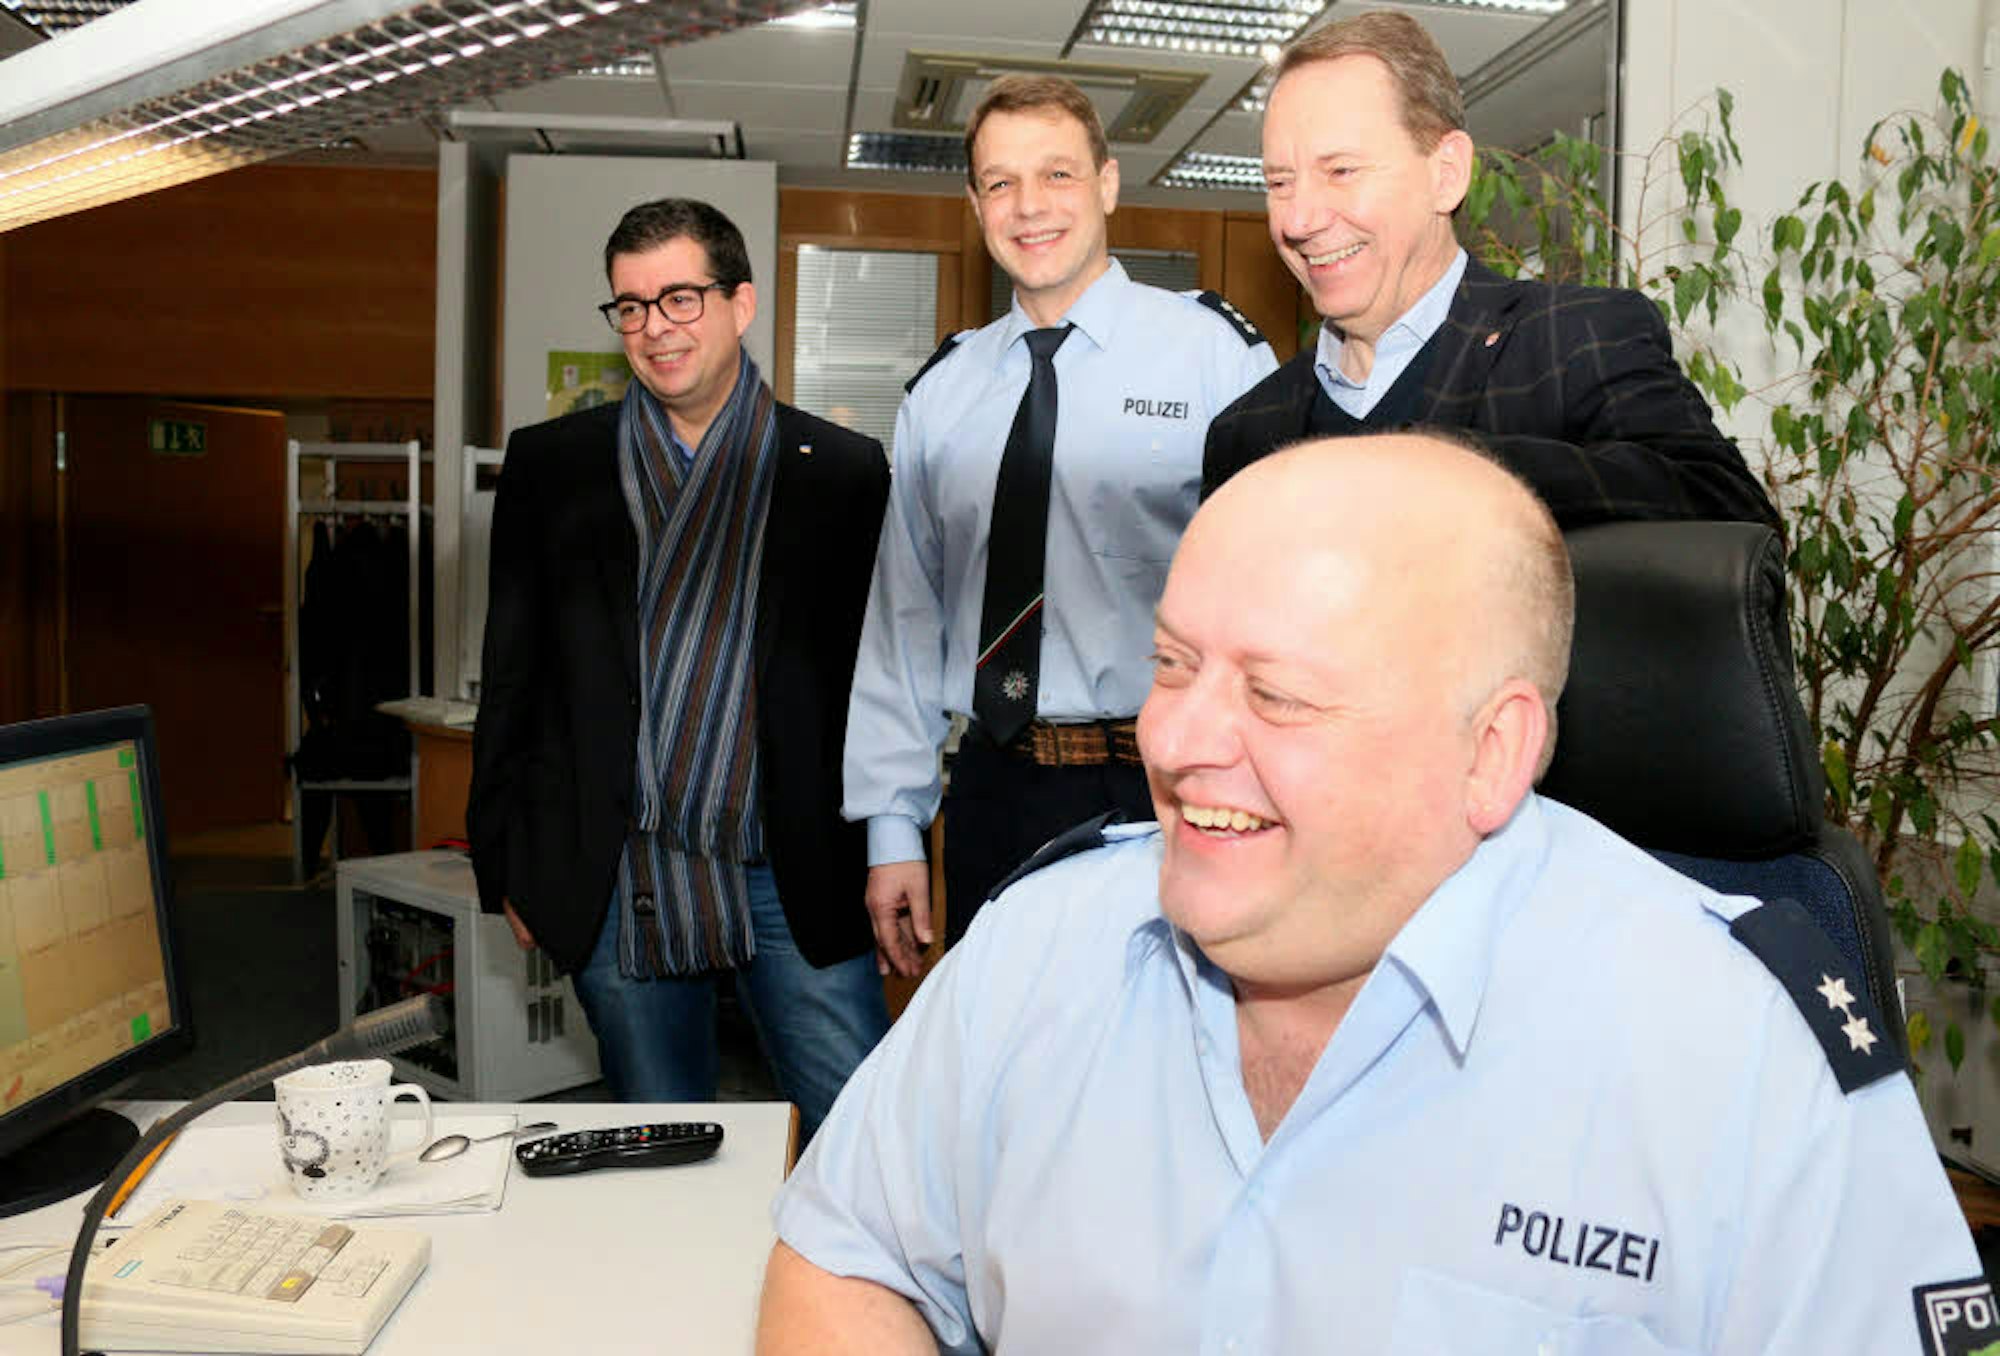 Gut war die Stimmung auf der Polizeileitstelle, wo Andreas Groß (2.v.l.) und Thomas Keller (r.) den prominenten Besuch bekamen.